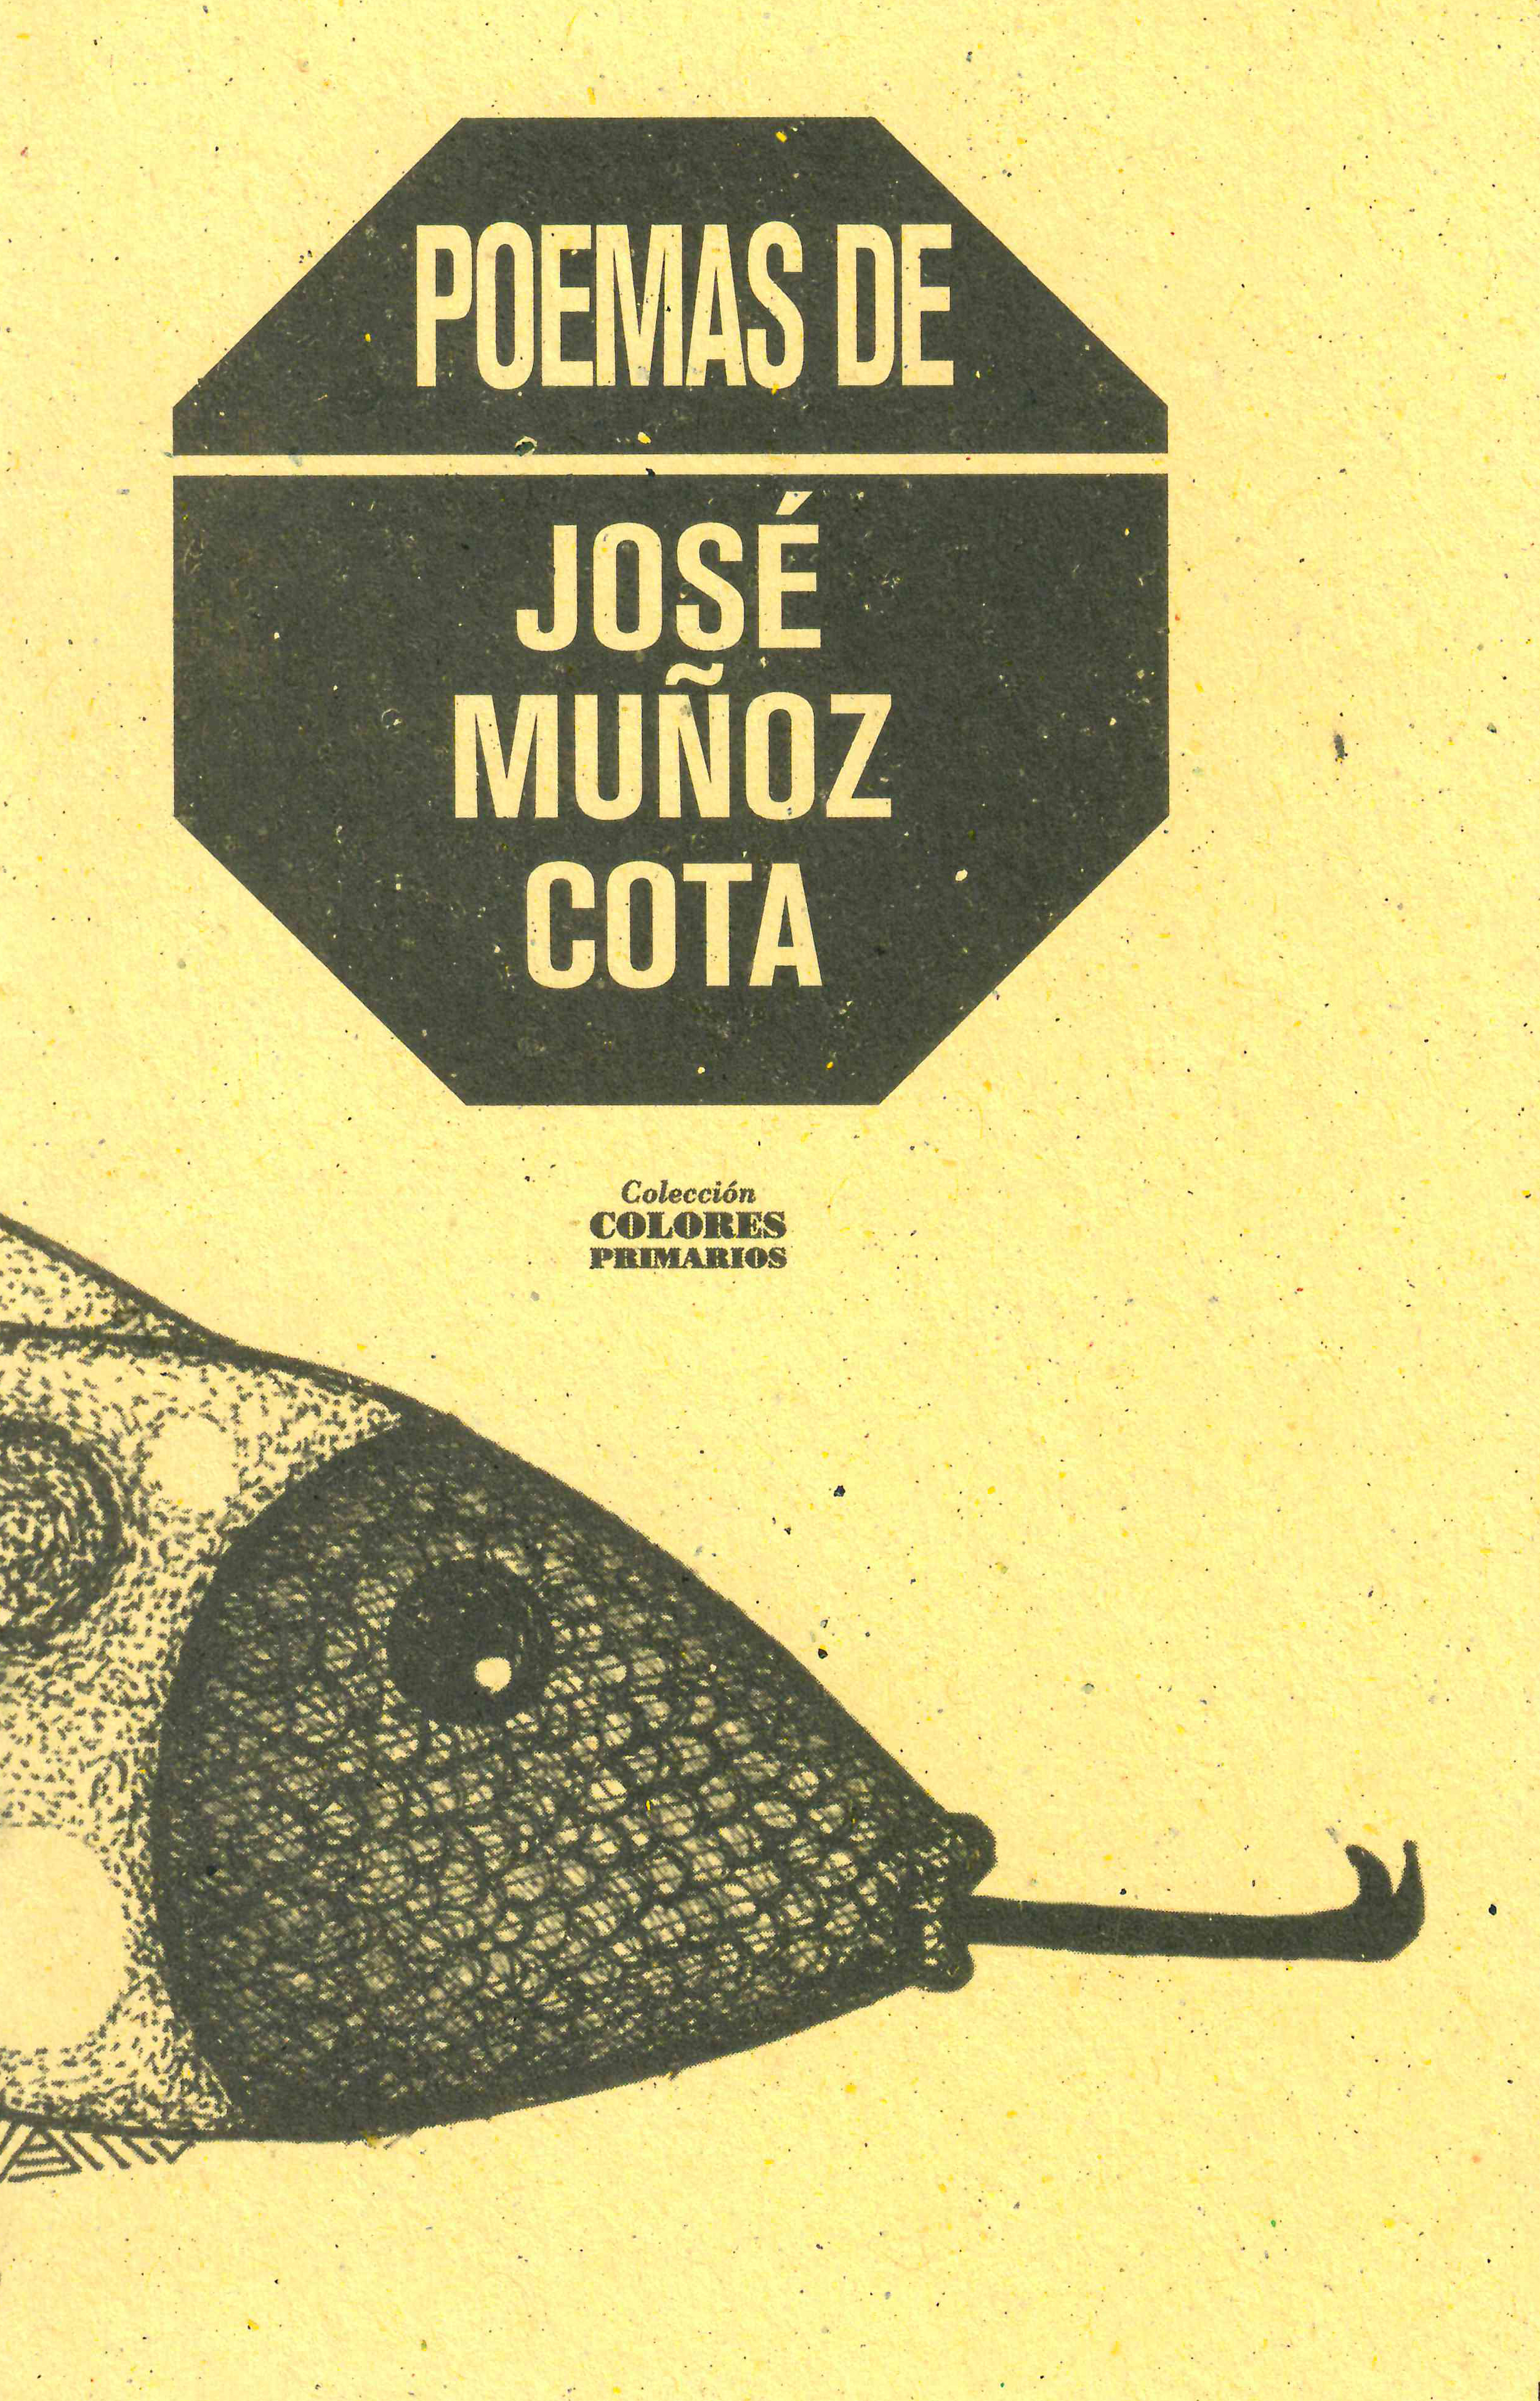 José Muñoz Cota